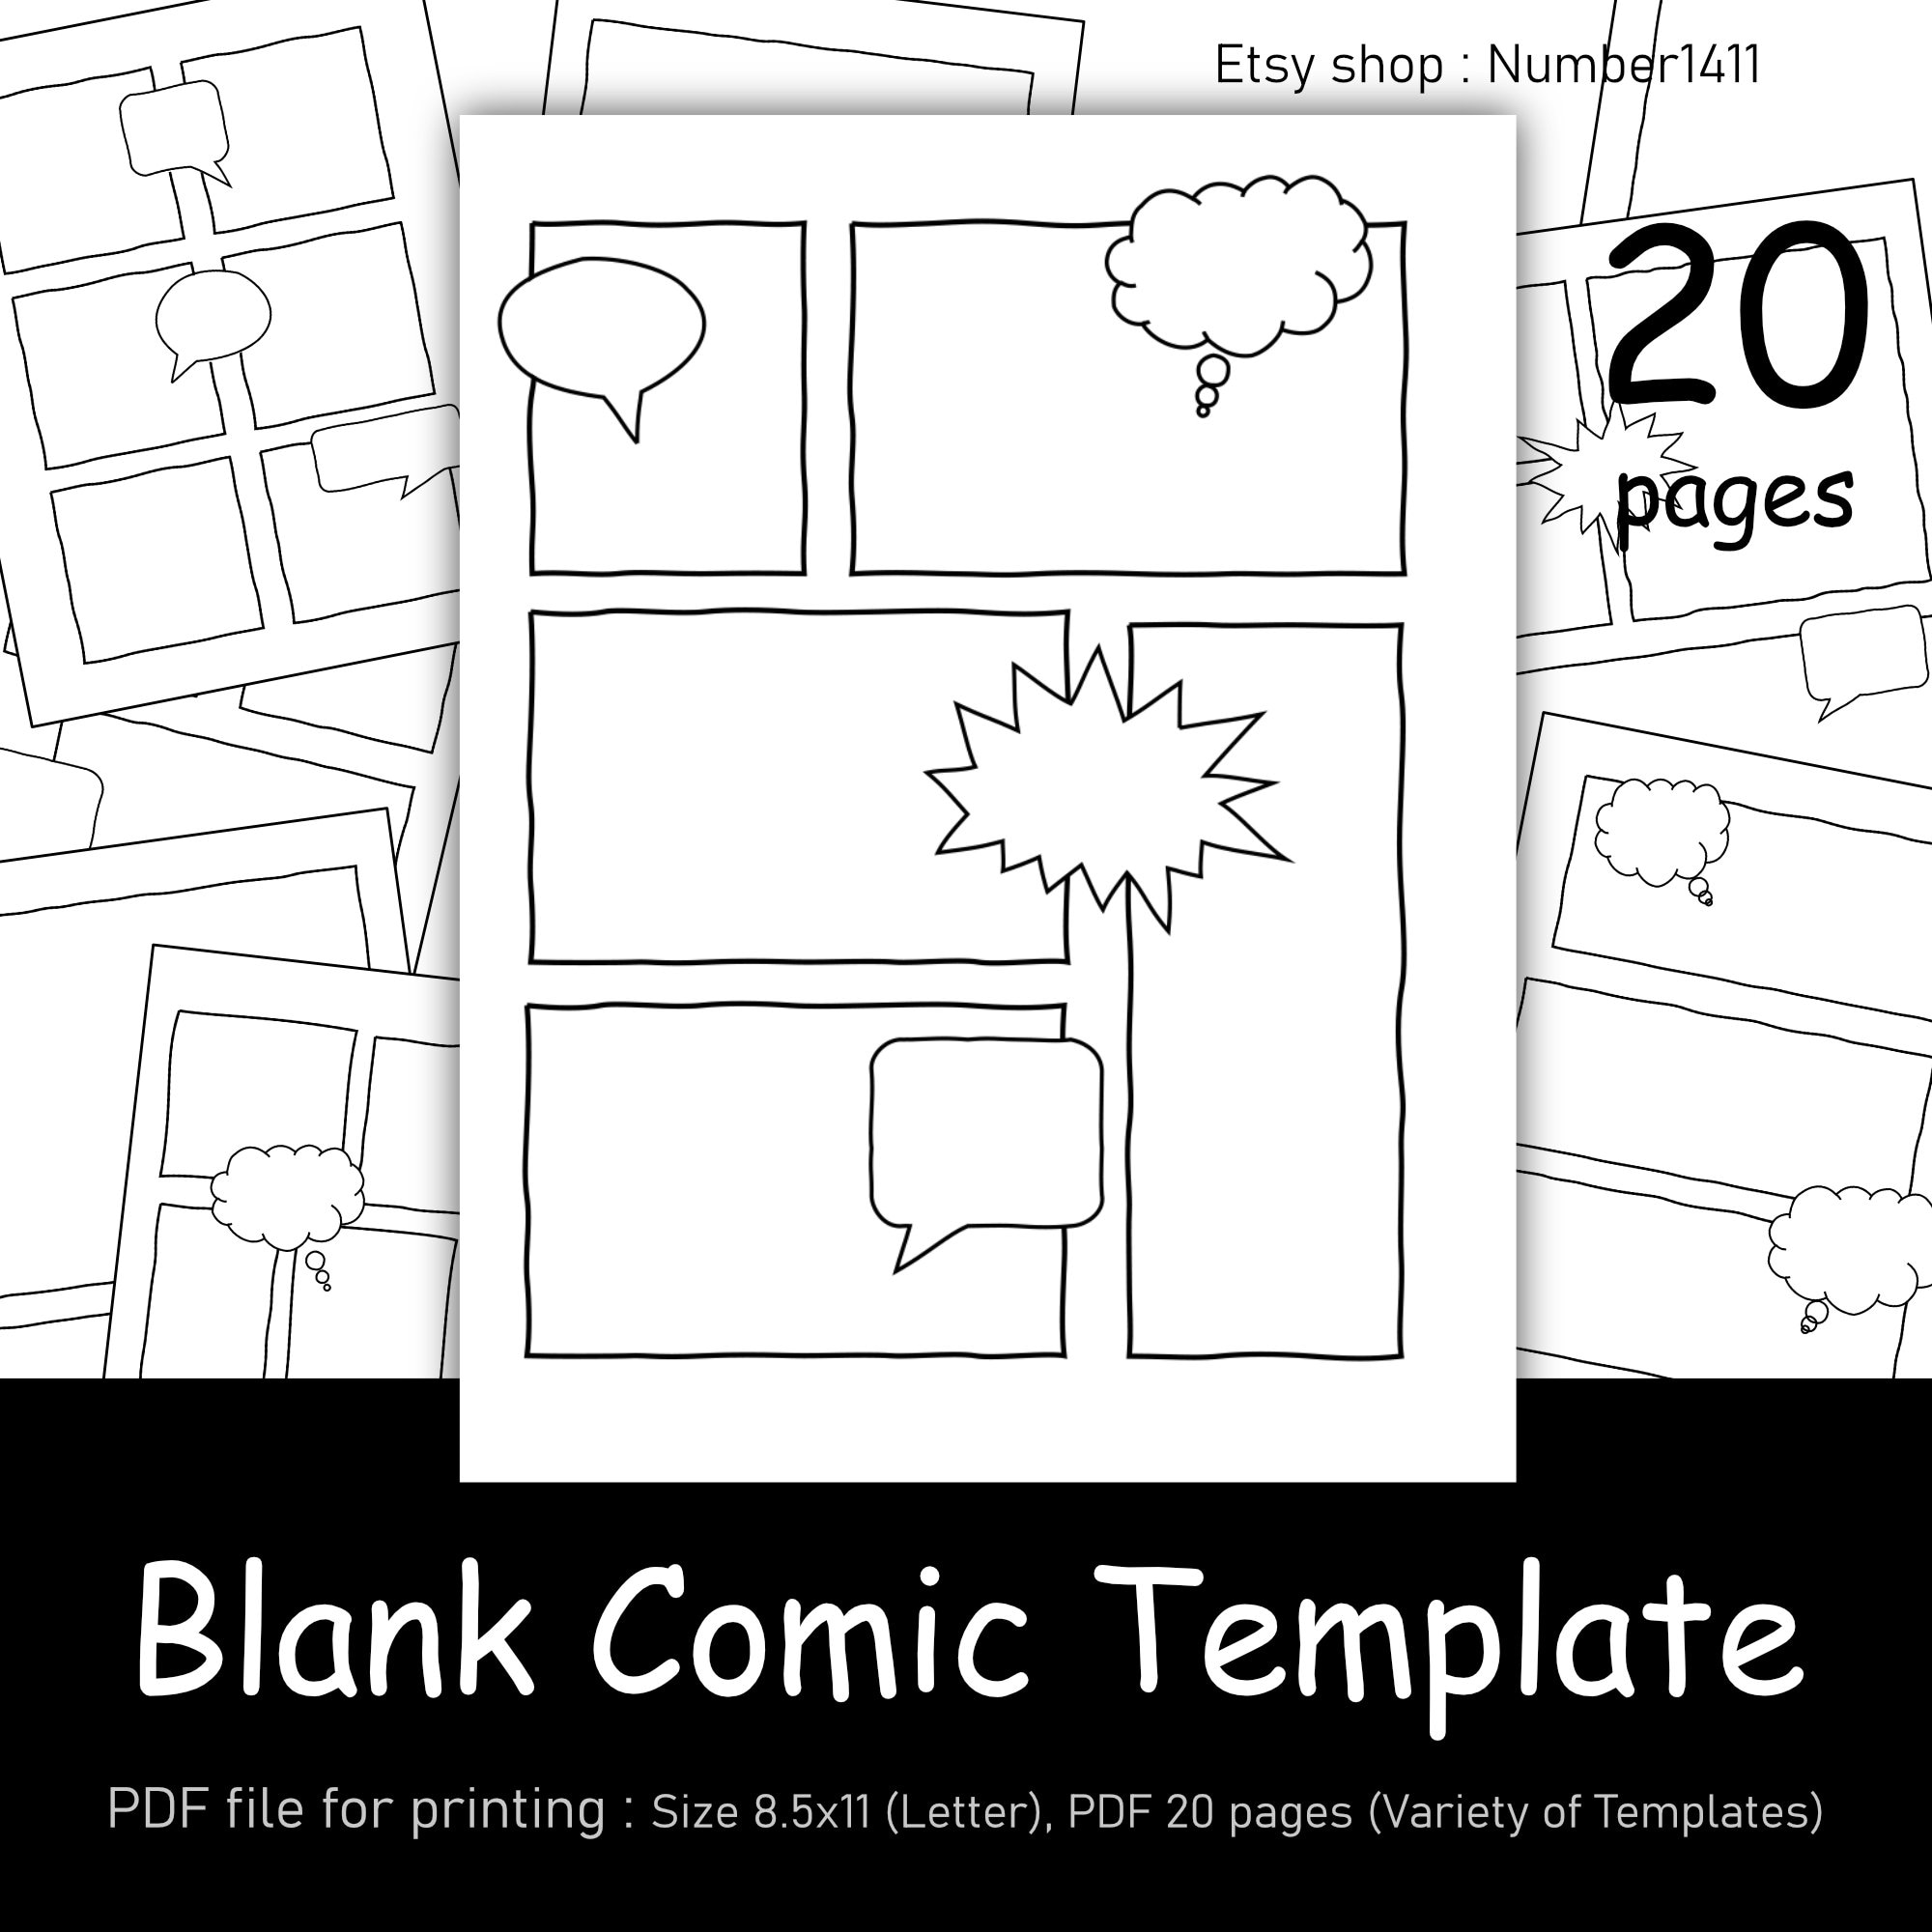 Comic Strip Template, Comic Book Paper